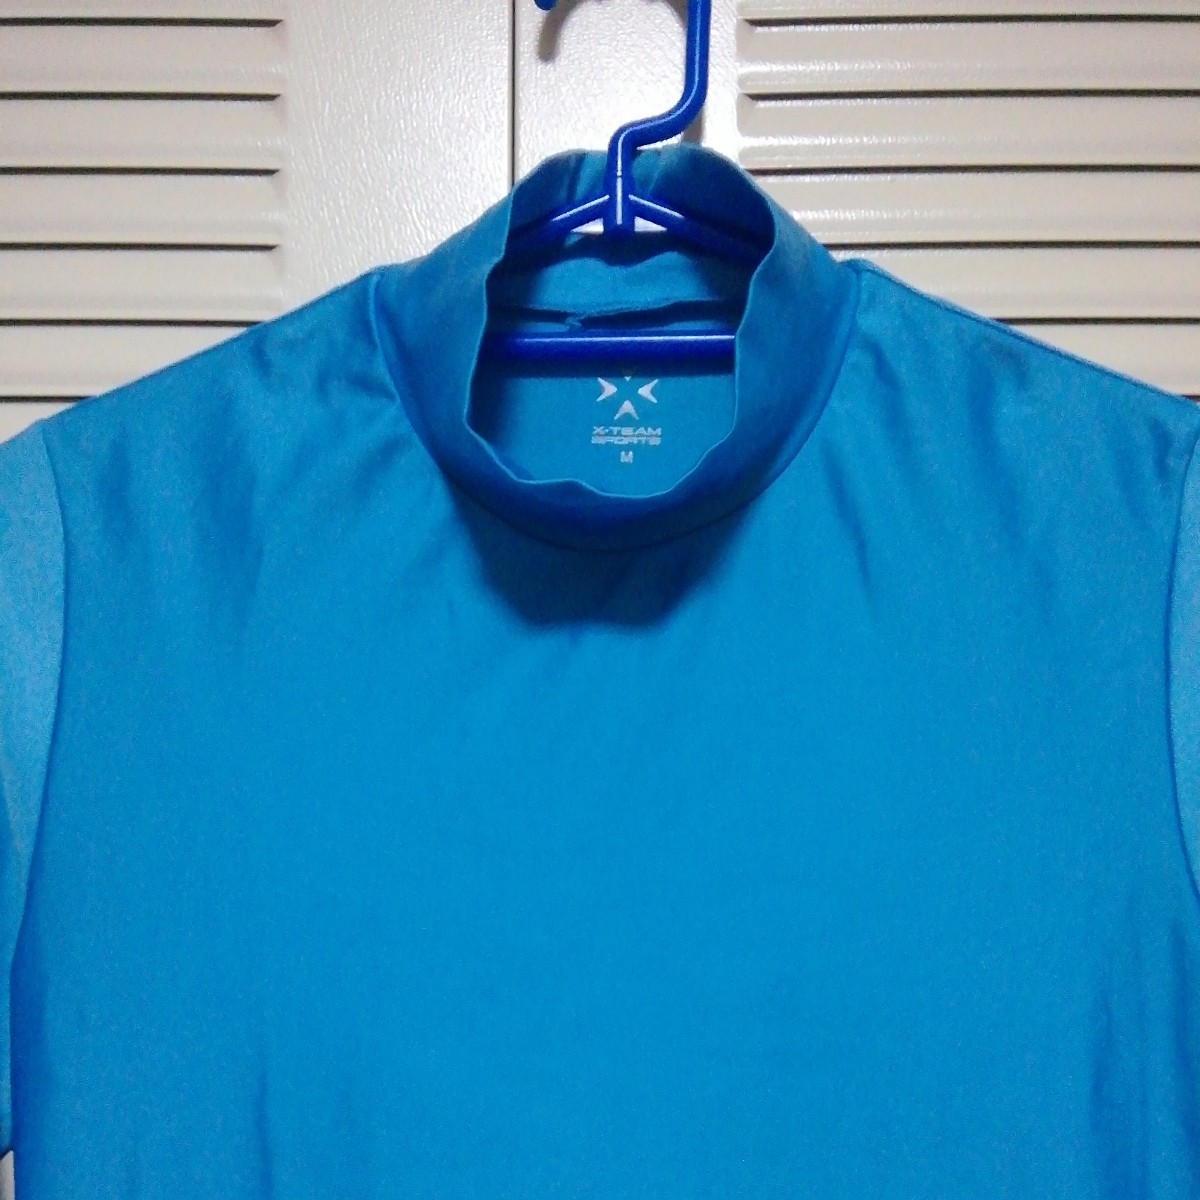 *[ б/у одежда ]X-TEAM SPORTS( X команда спорт ) длинный рукав компрессионный рубашка (mok шея ) M размер синий возможно женский (^_^;)